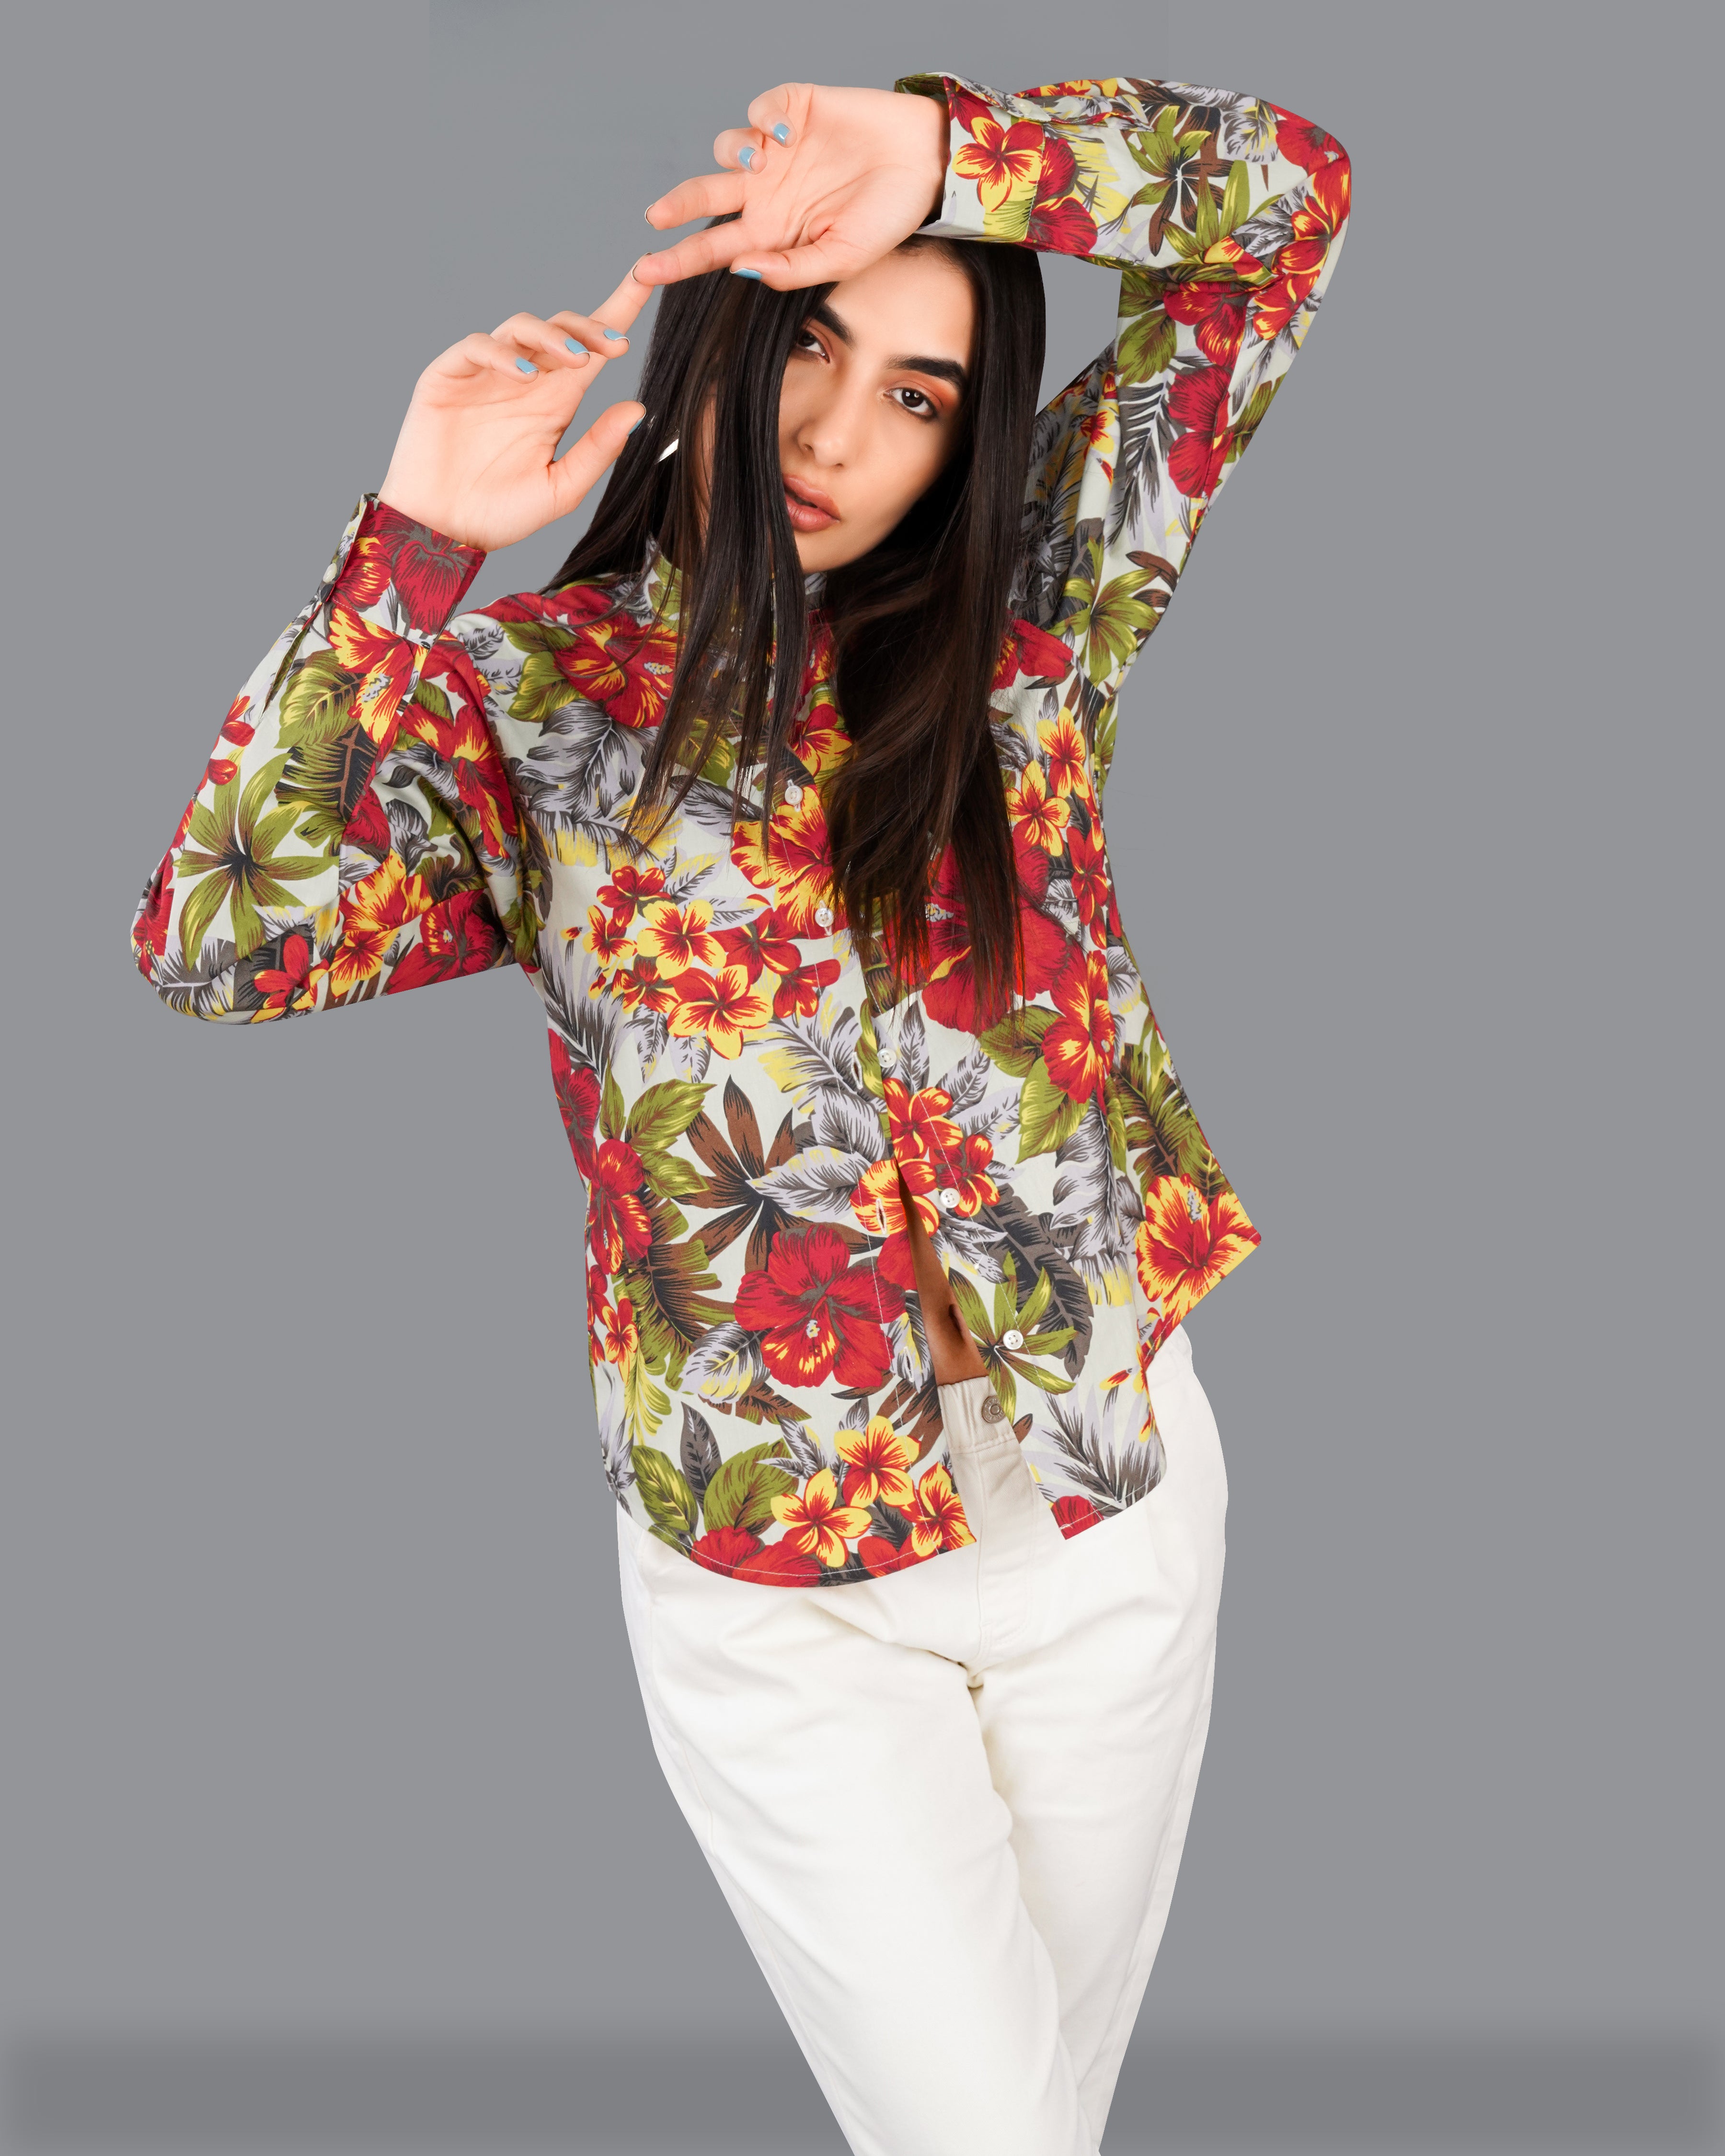 Jasper Red Multicolour Floral Printed Premium Cotton Shirt WS015-M-32, WS015-M-34, WS015-M-36, WS015-M-38, WS015-M-40, WS015-M-42